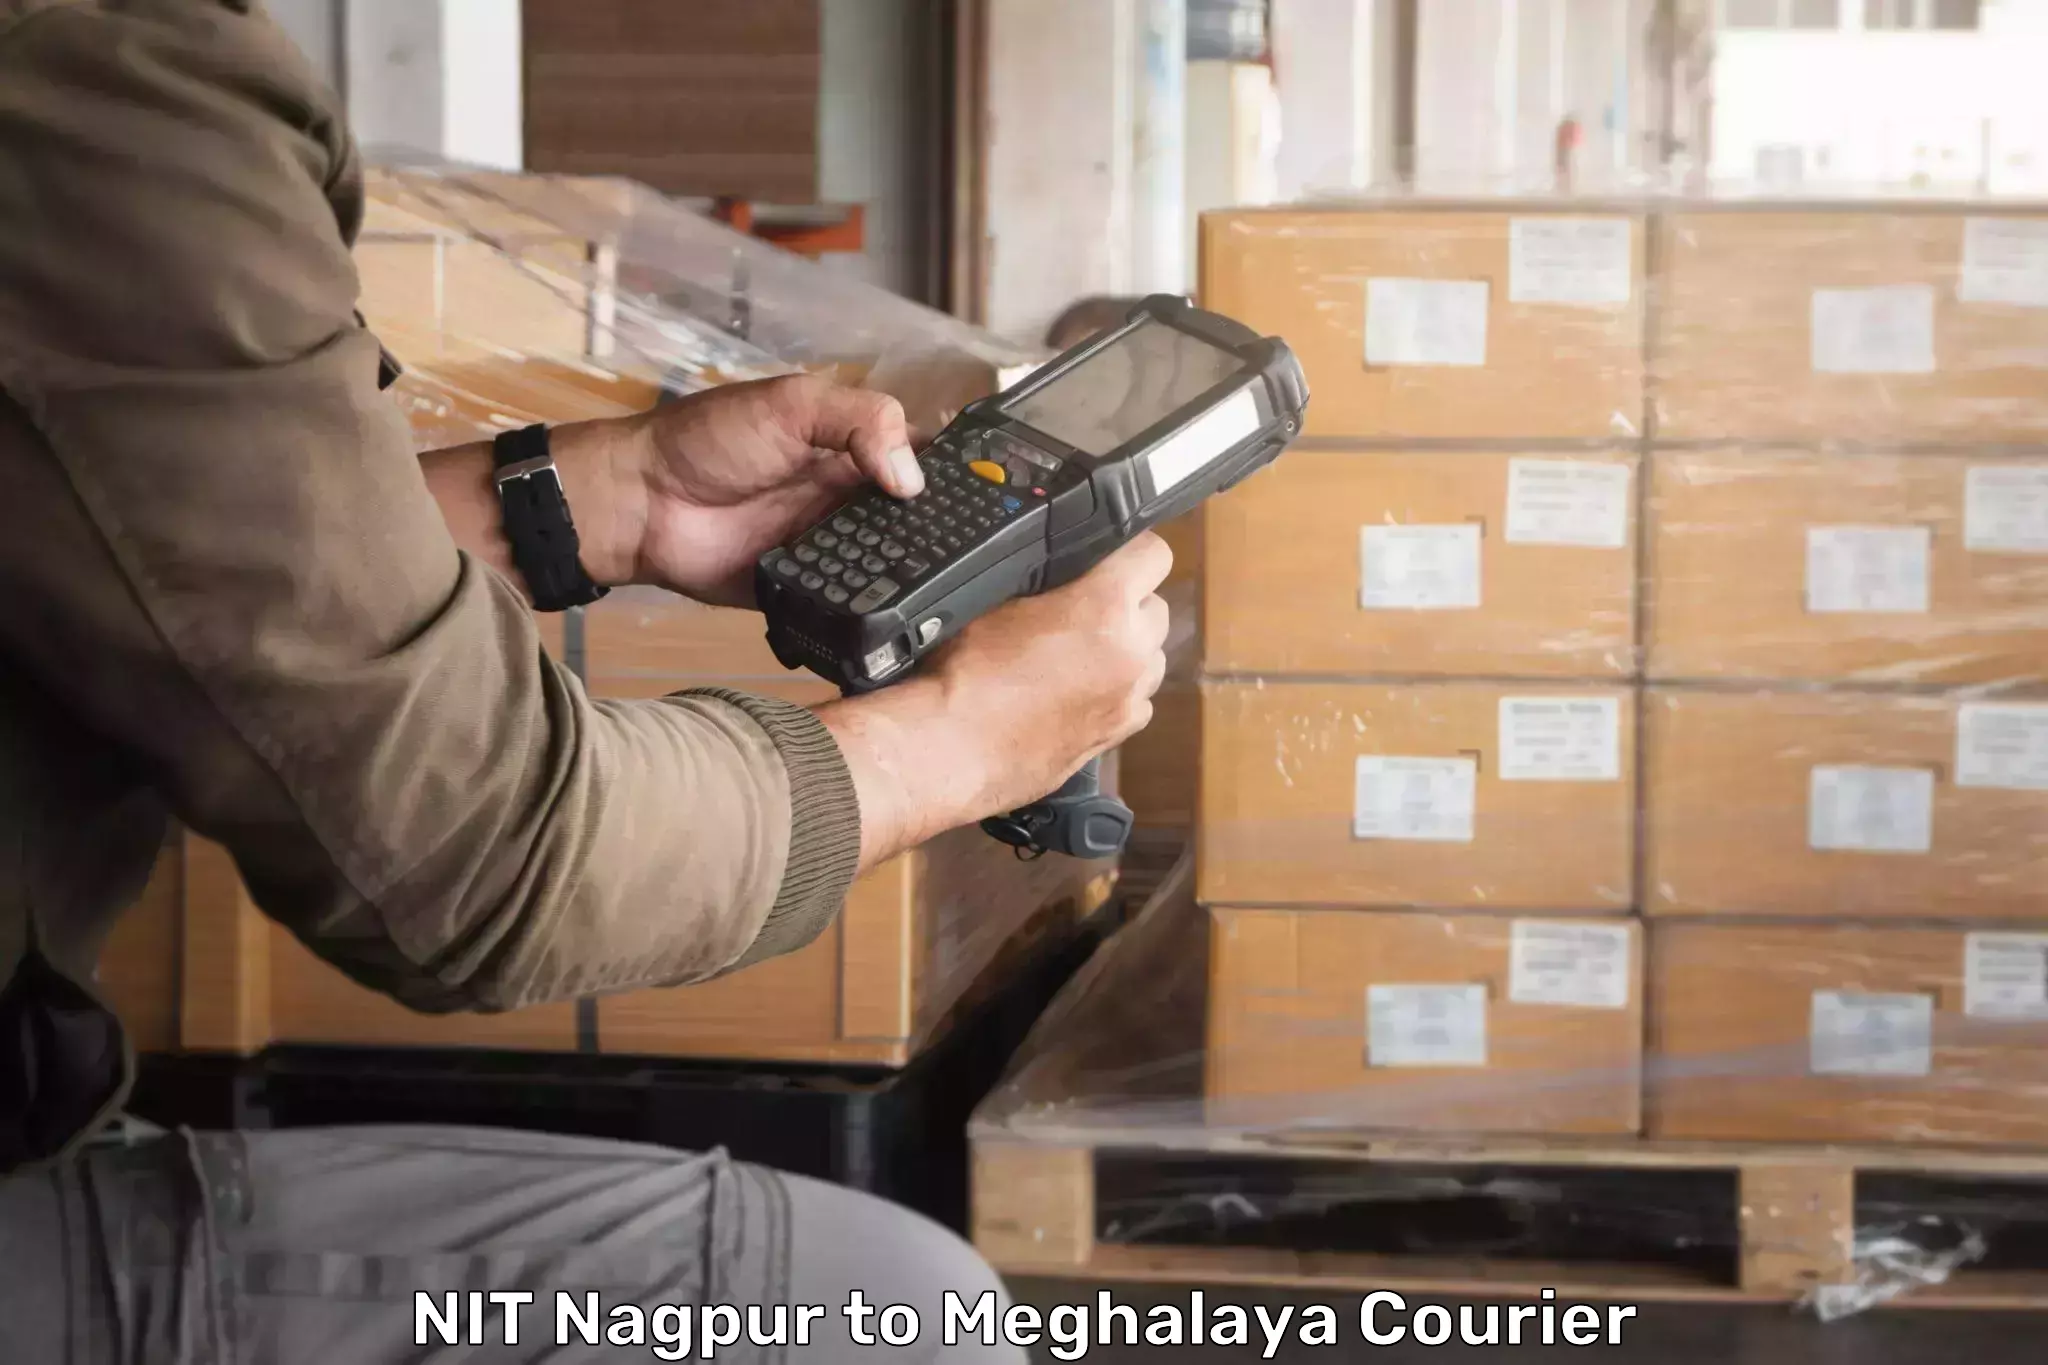 Budget-friendly shipping NIT Nagpur to Shillong